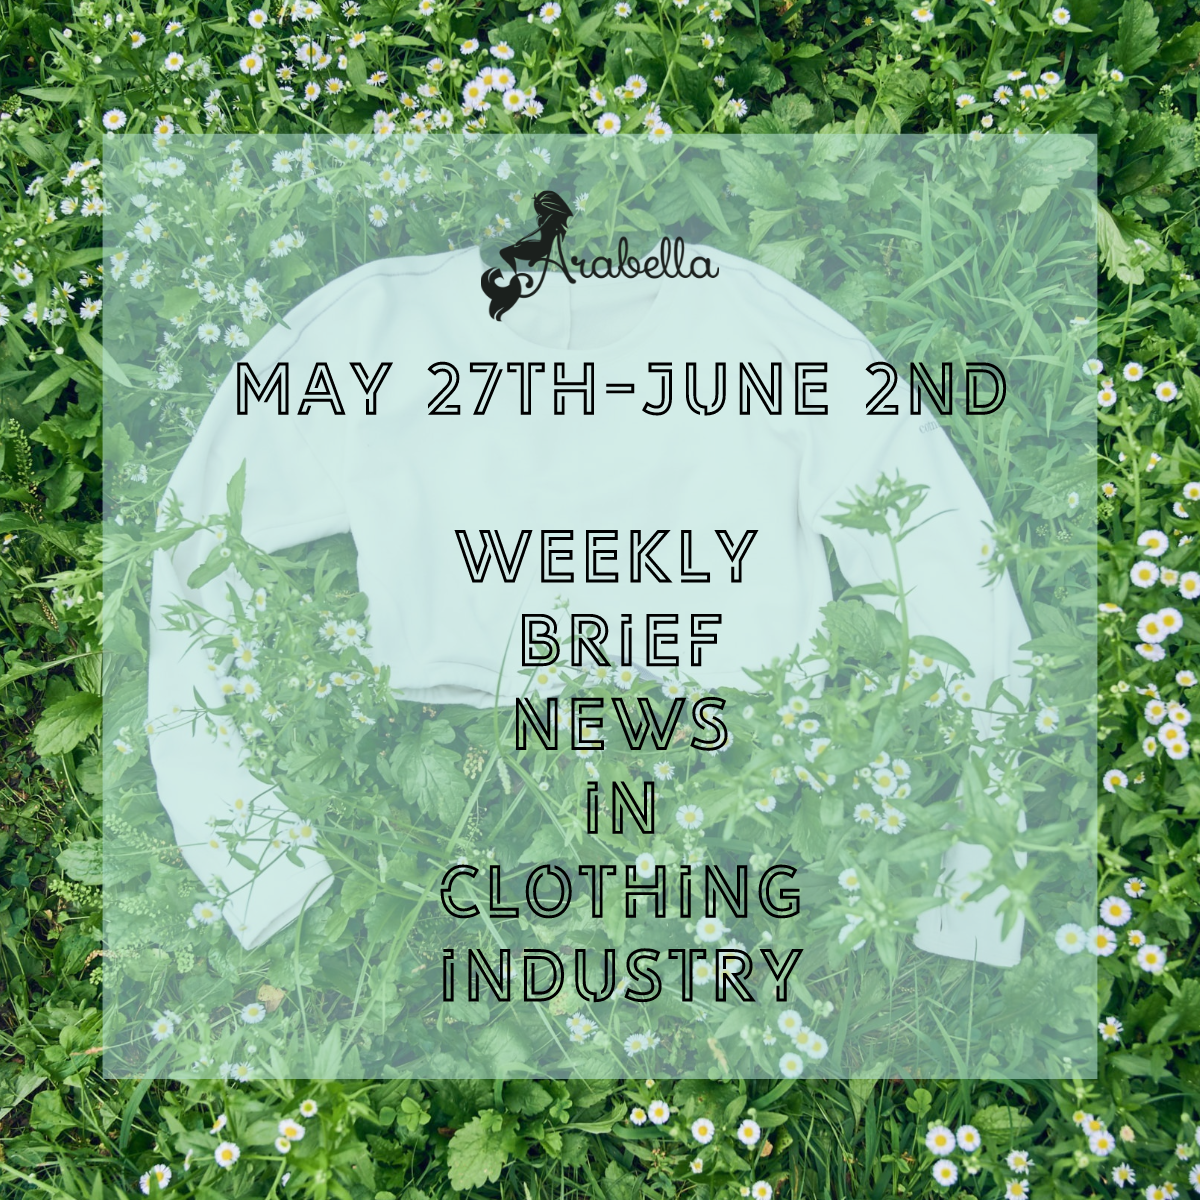 Nuostabios naujienos apie biologinį elastaną!Trumpos Arabella savaitės naujienos drabužių pramonėje gegužės 27–birželio 2 d.